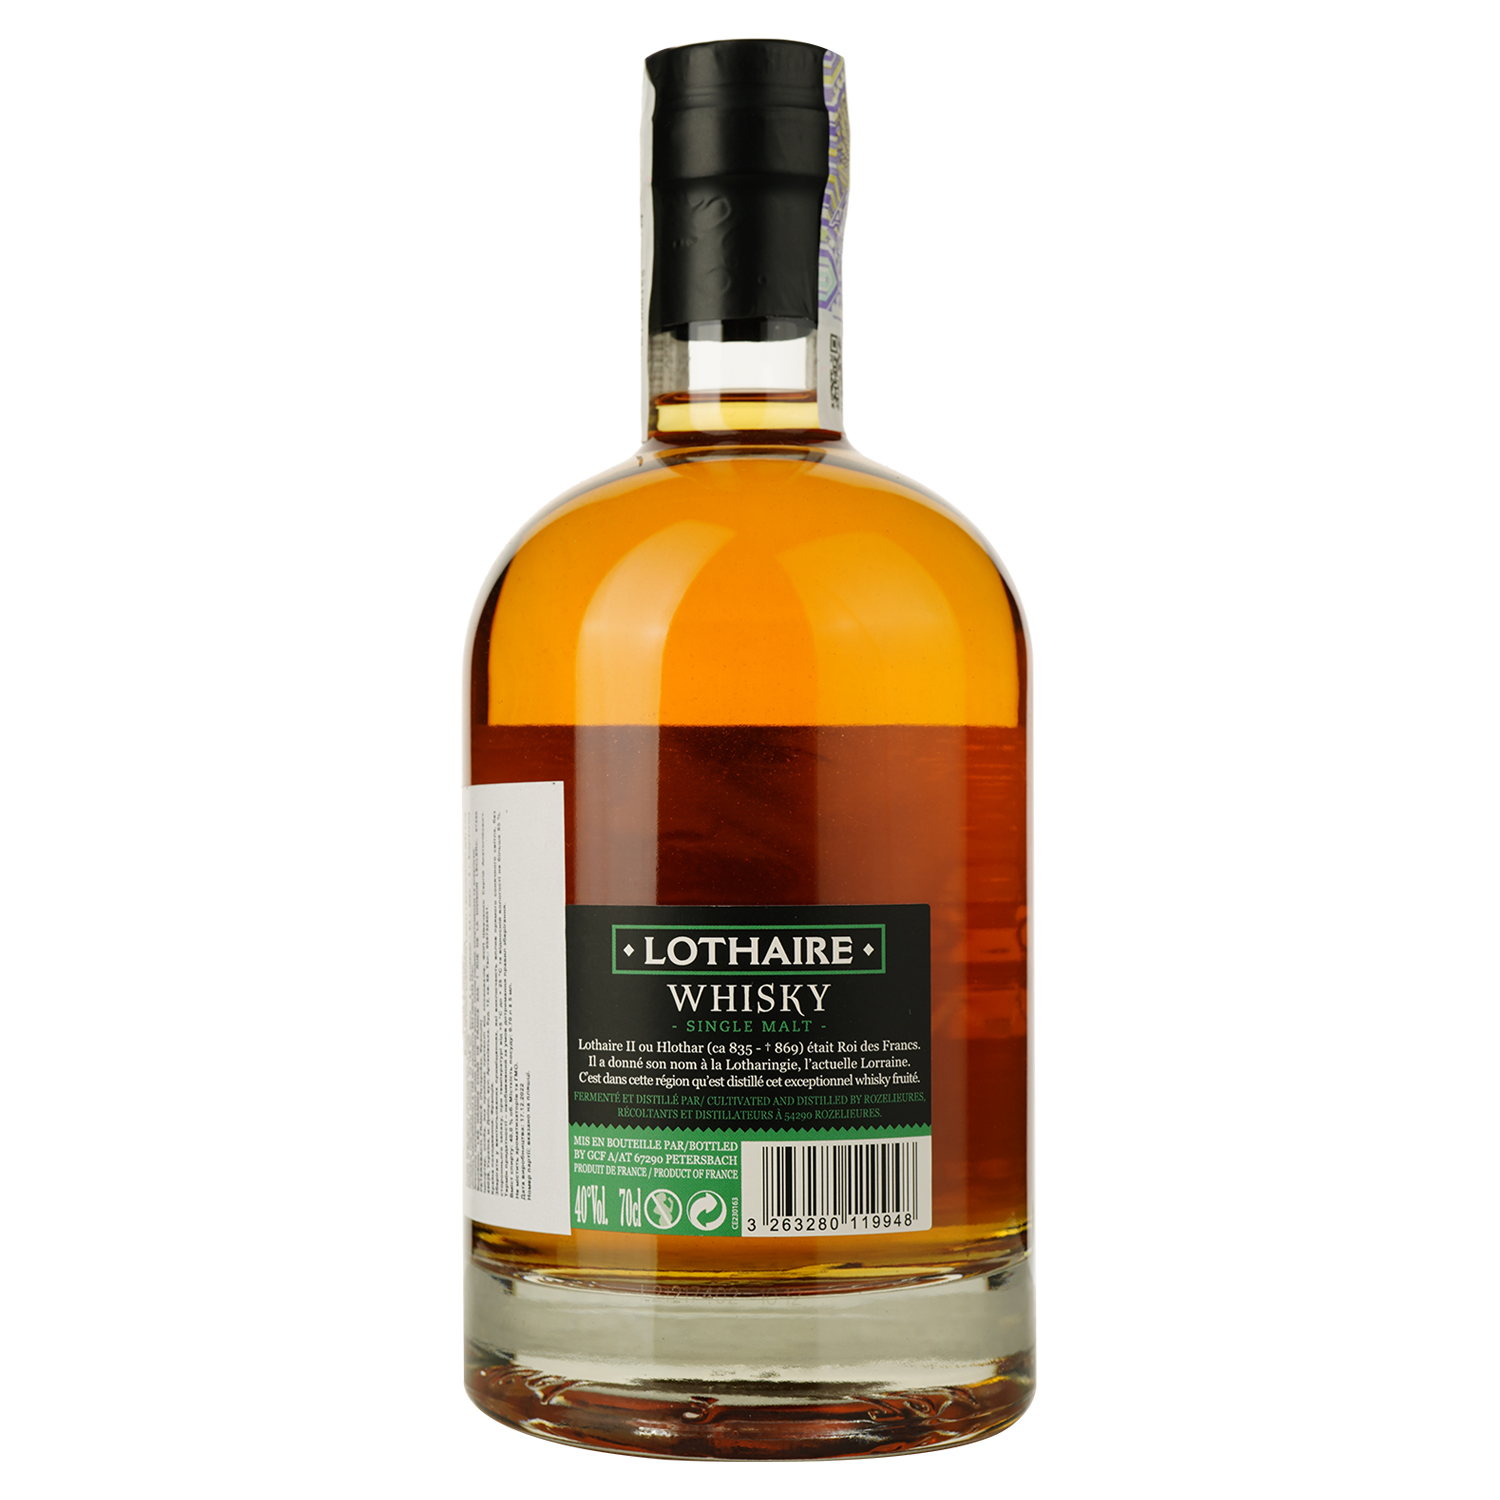 Віскі Lothaire Single Malt Scotch Whisky, в подарунковій упаковці, 40%, 0.7 л - фото 3